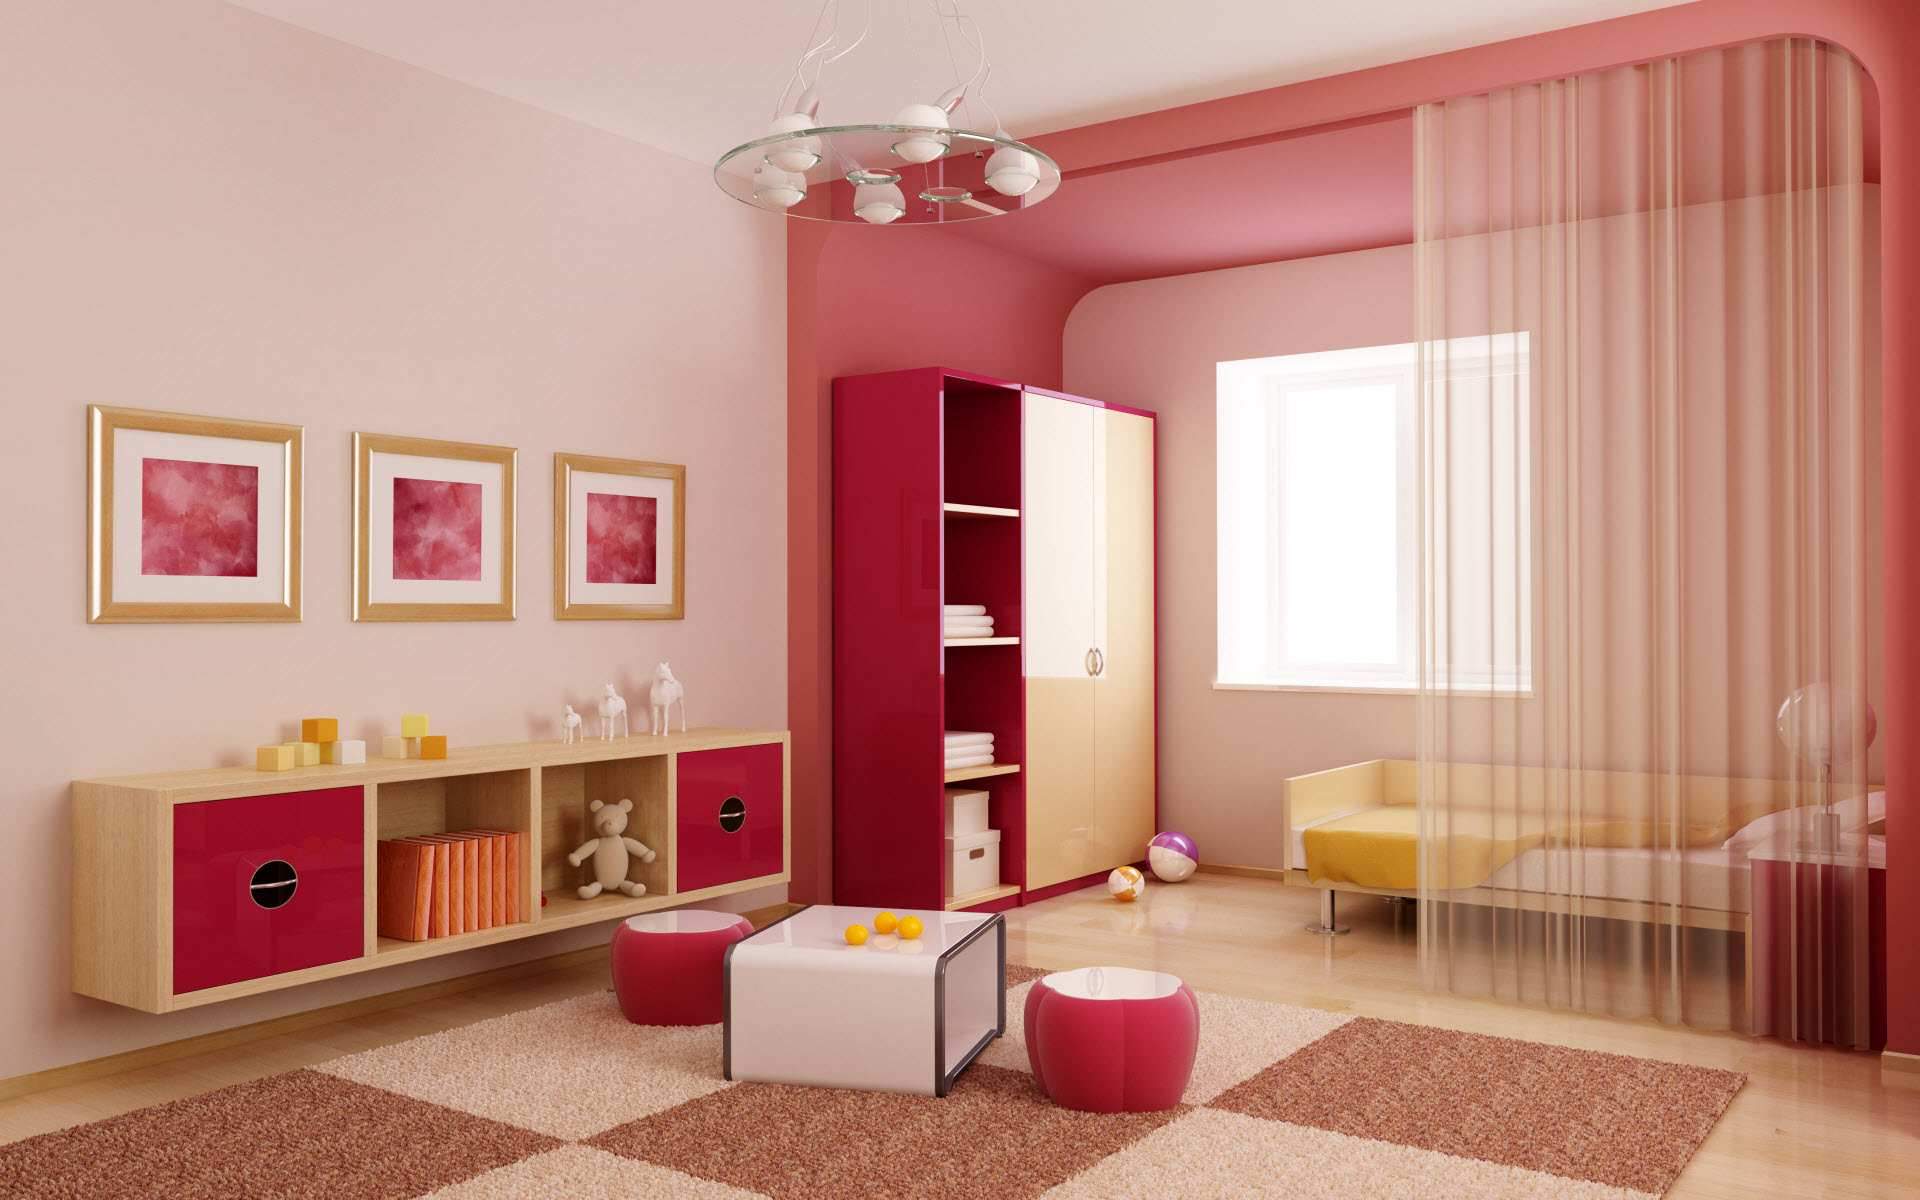 Farbe Amaranth im Kinder- oder Jugendzimmer